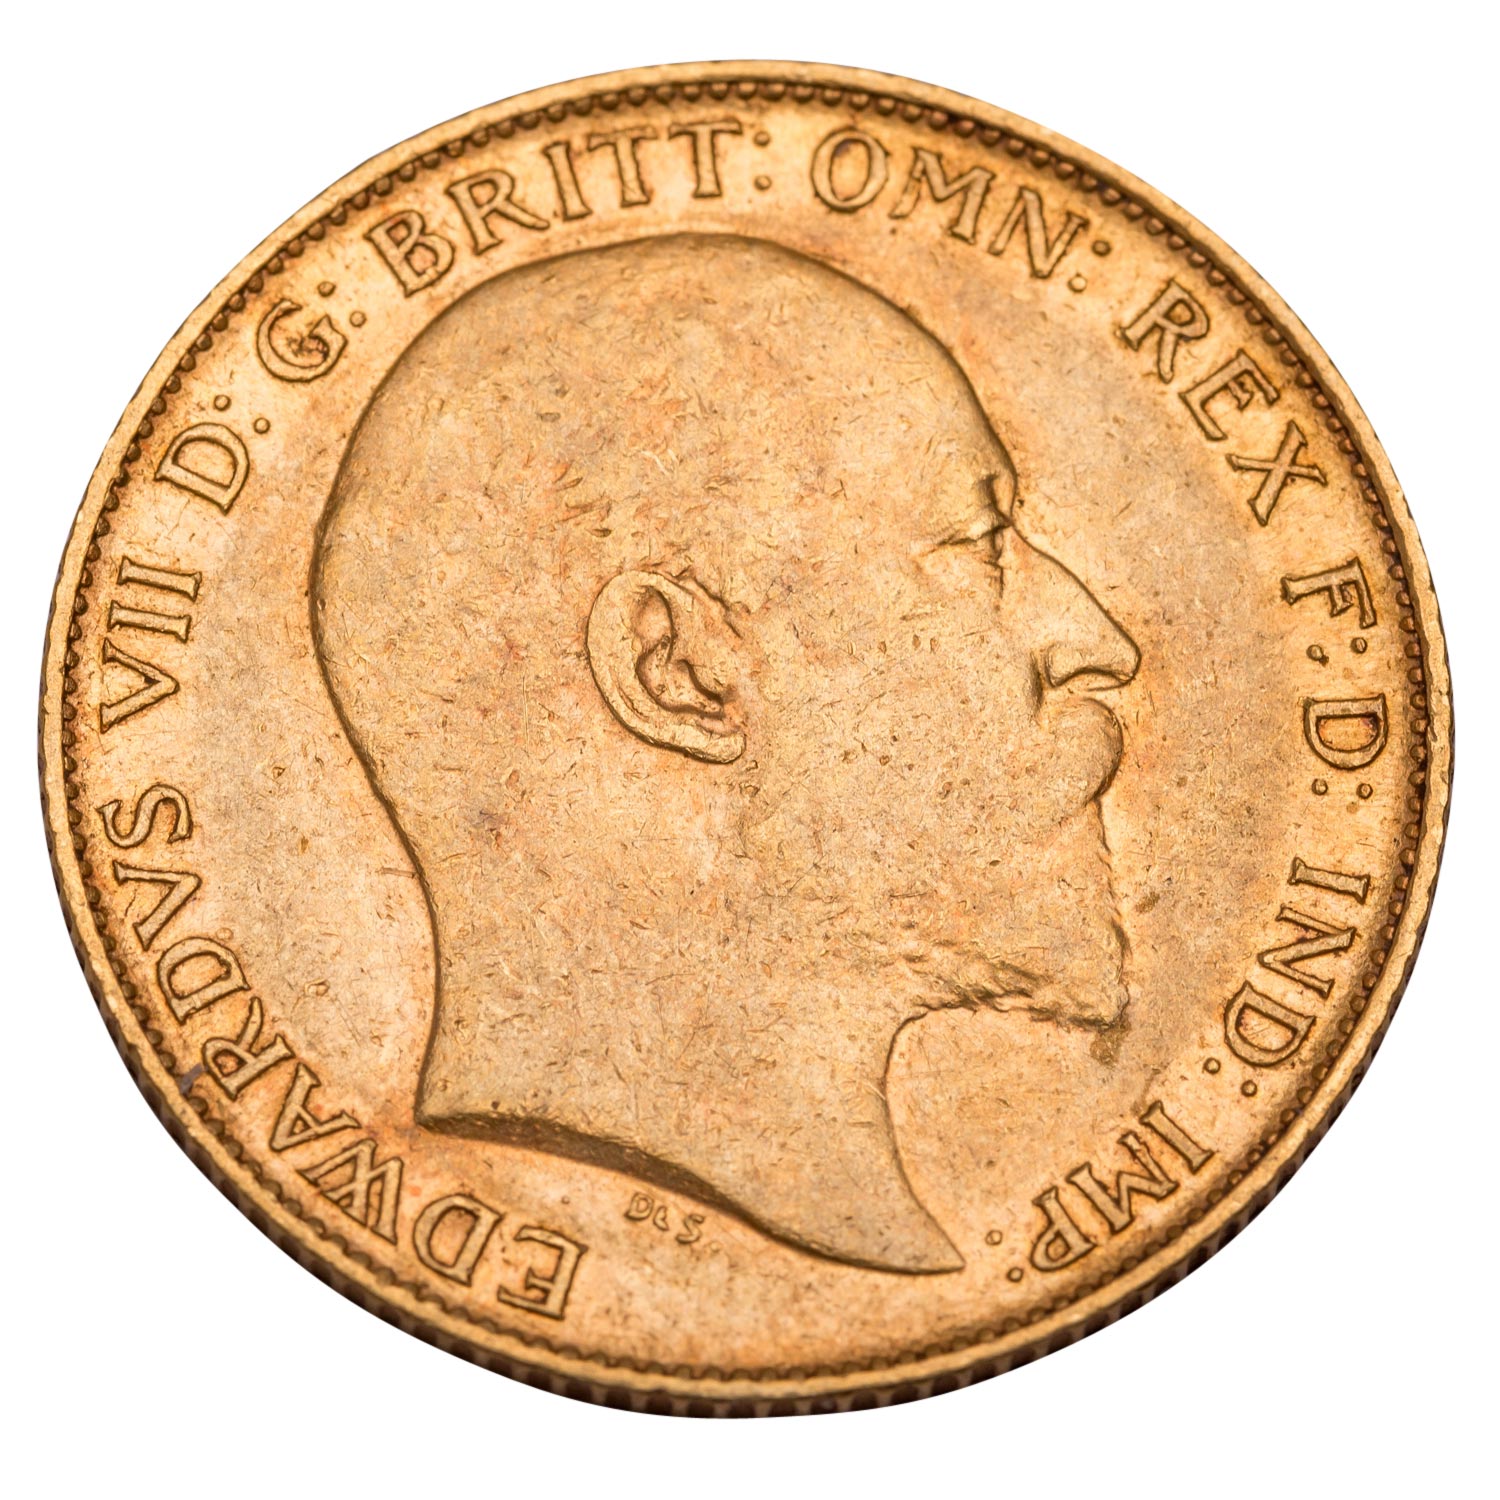 Großbritannien /GOLD - Edward II. 1/2 Sovereign 1908